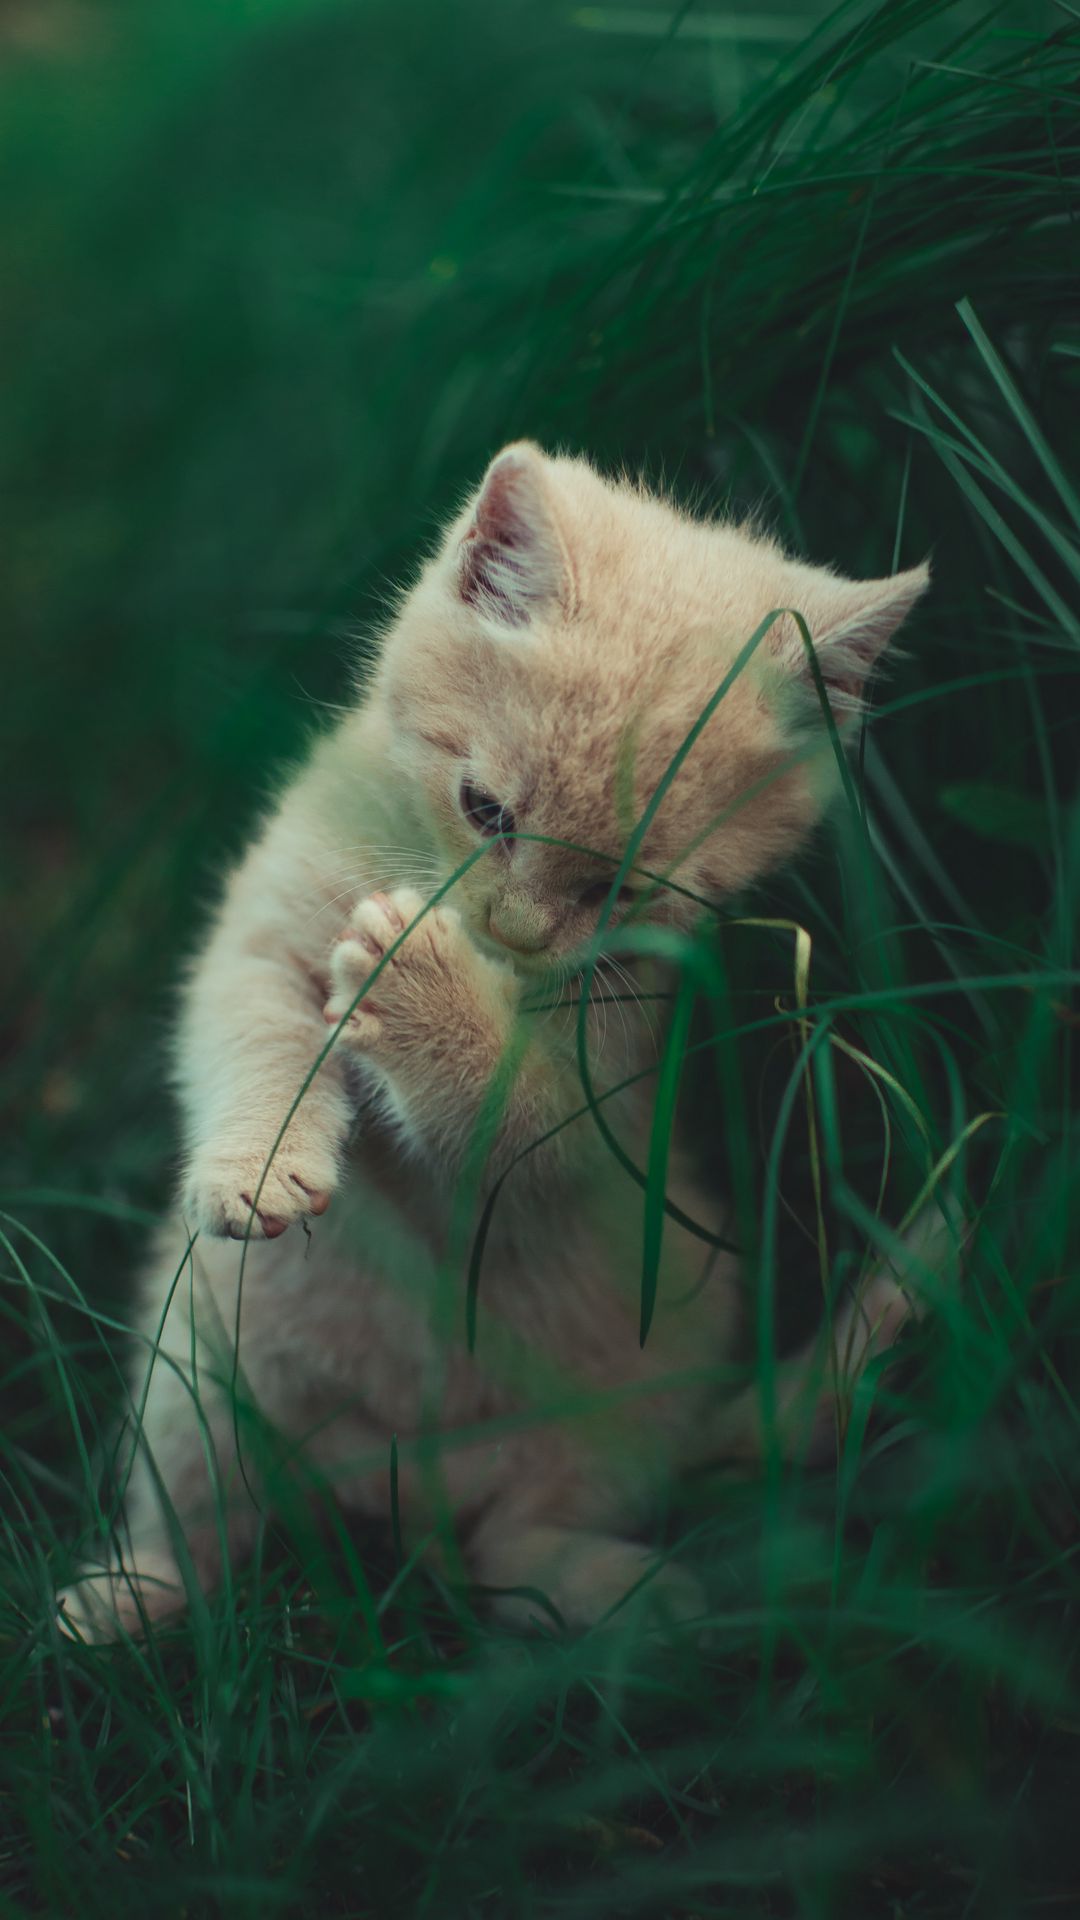 Nếu bạn yêu mèo và đang tìm kiếm hình nền cho điện thoại của mình, đừng bỏ qua các hình nền mèo chơi đùa. Hình nền này có con mèo con với bộ lông mềm mại đang vui đùa trên bãi cỏ. Thật đáng yêu và sẽ khiến bạn cảm thấy vui vẻ hơn khi sử dụng điện thoại của mình.